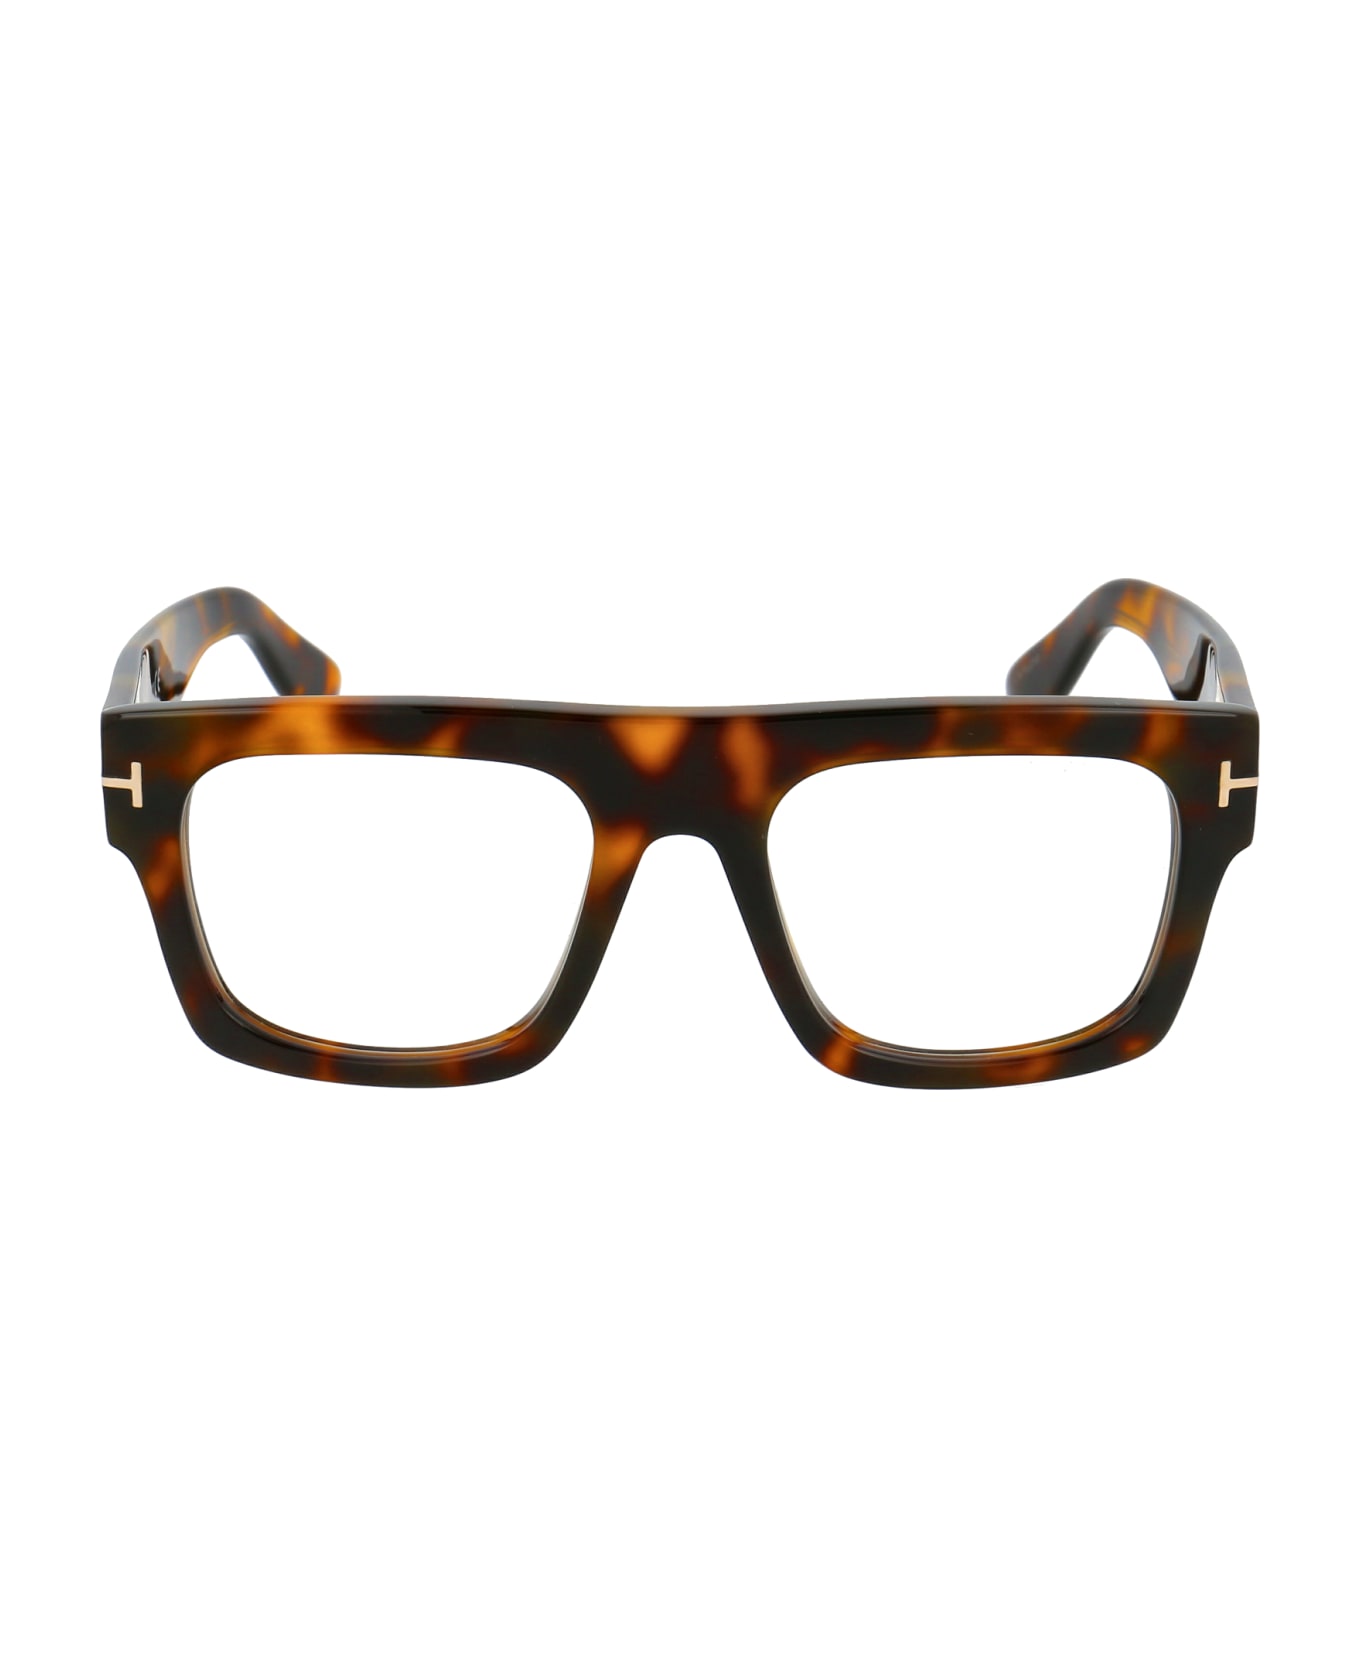 Tom Ford Eyewear Ft5634-b Glasses - 056 Avana/Altro